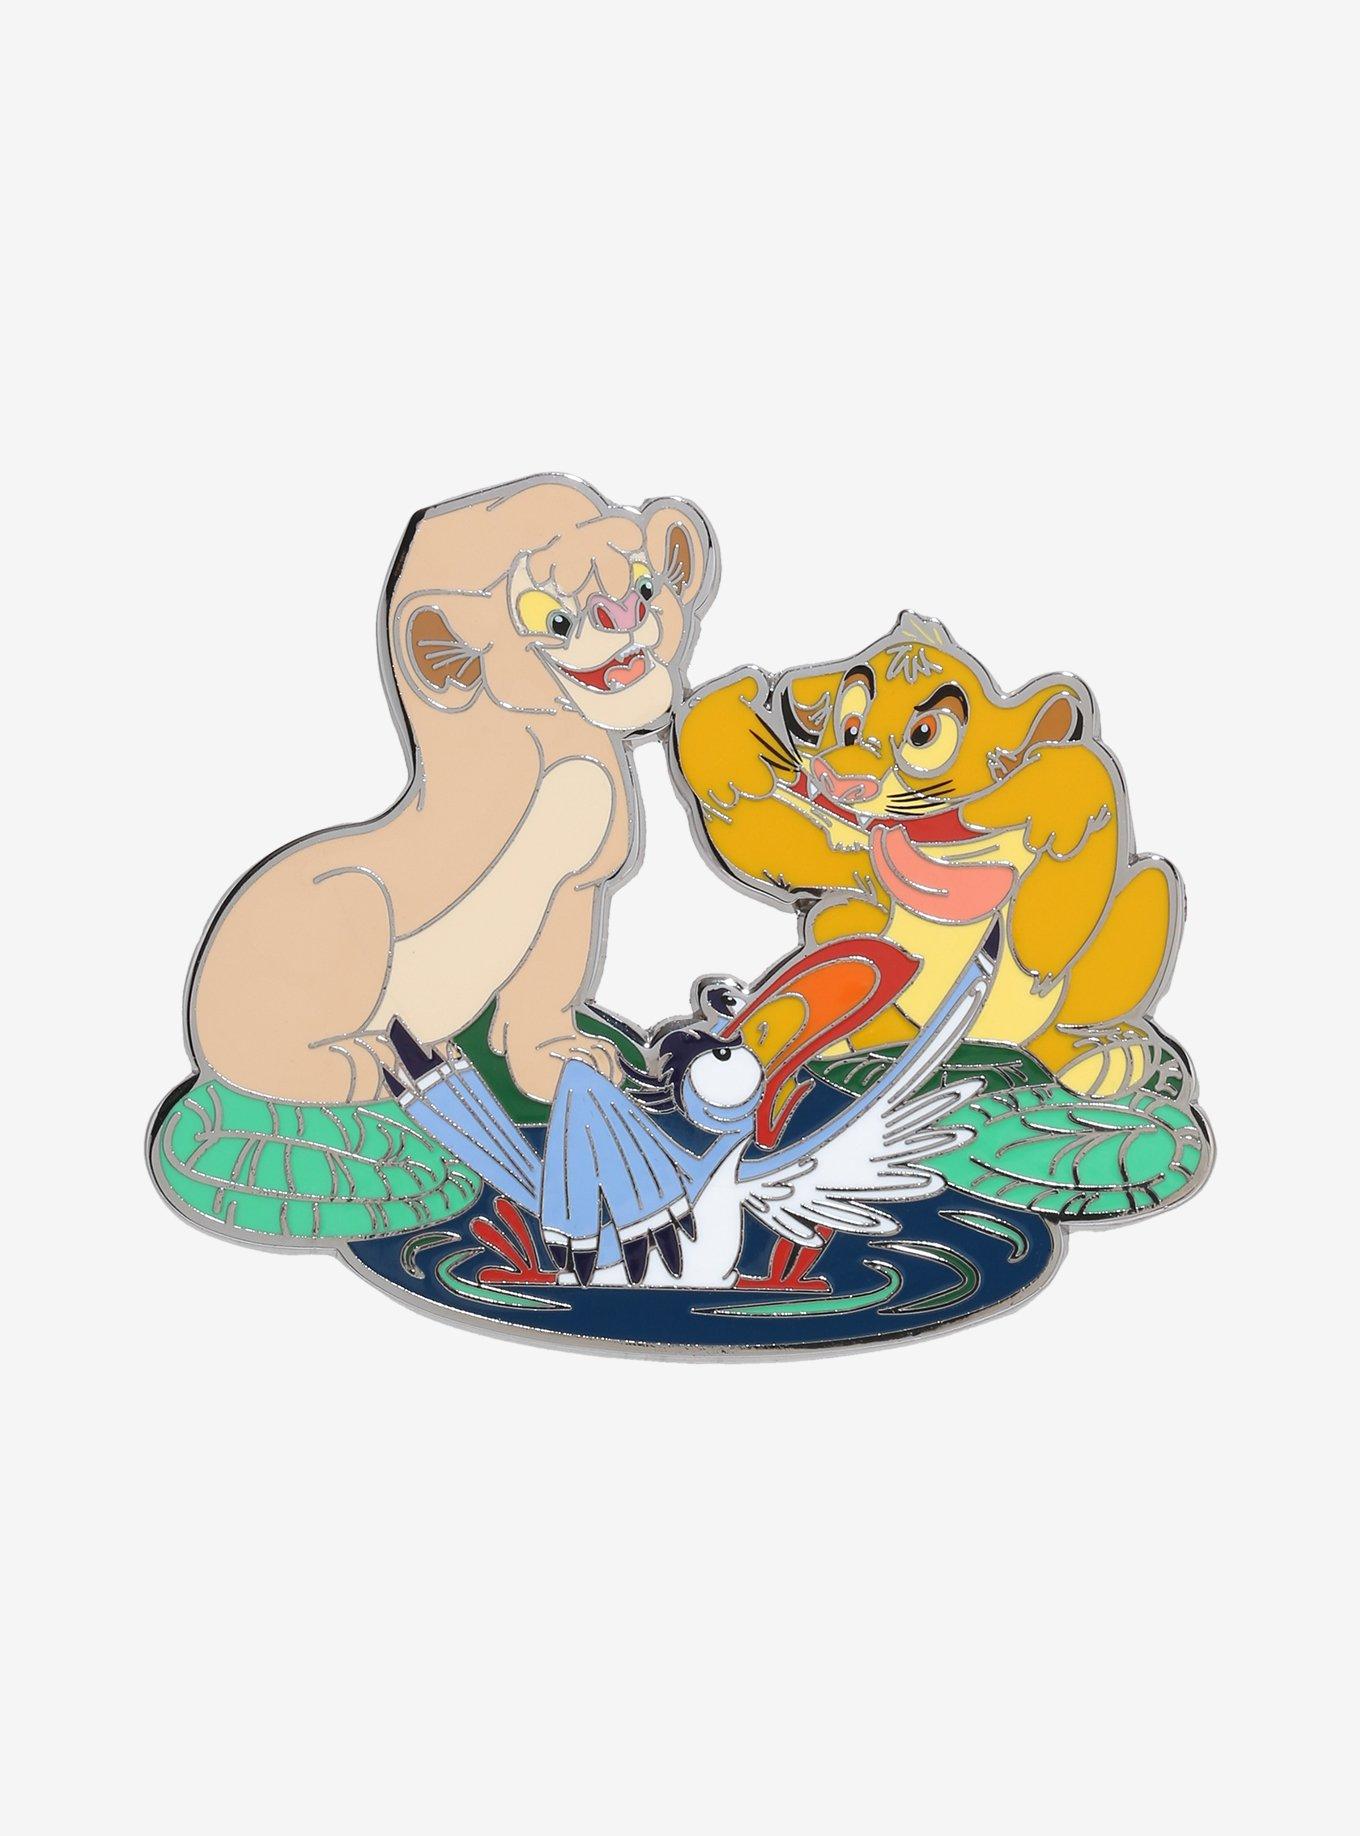 Disney The Lion King Young Simba, Nala, and Zazu Enamel Pin - BoxLunch Exclusive, , hi-res